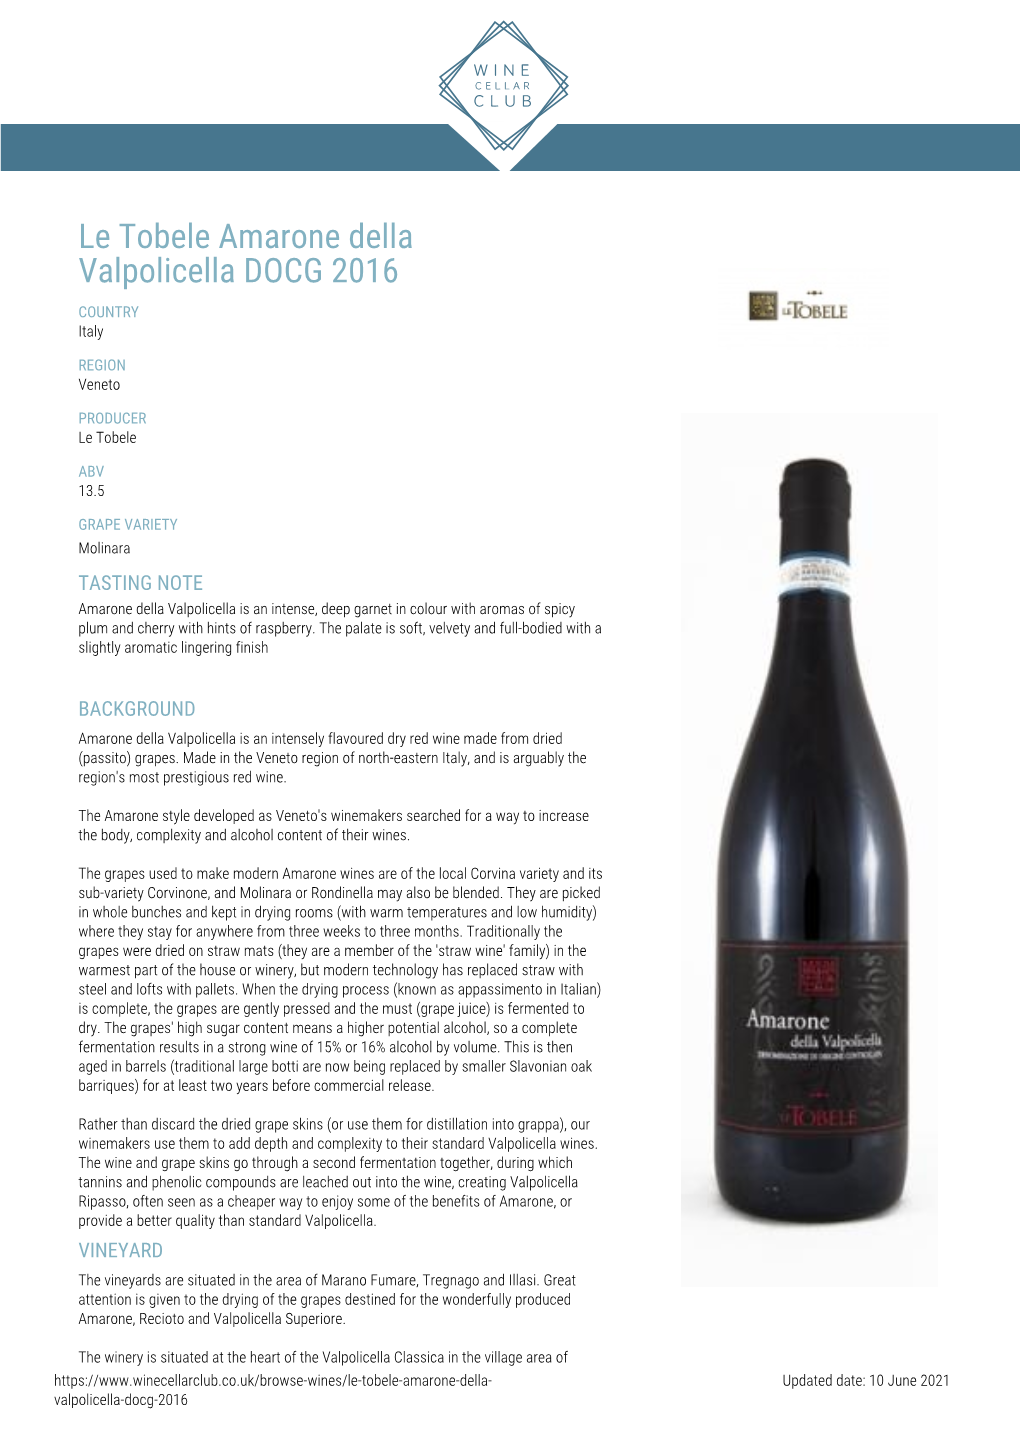 Le Tobele Amarone Della Valpolicella DOCG 2016 COUNTRY Italy